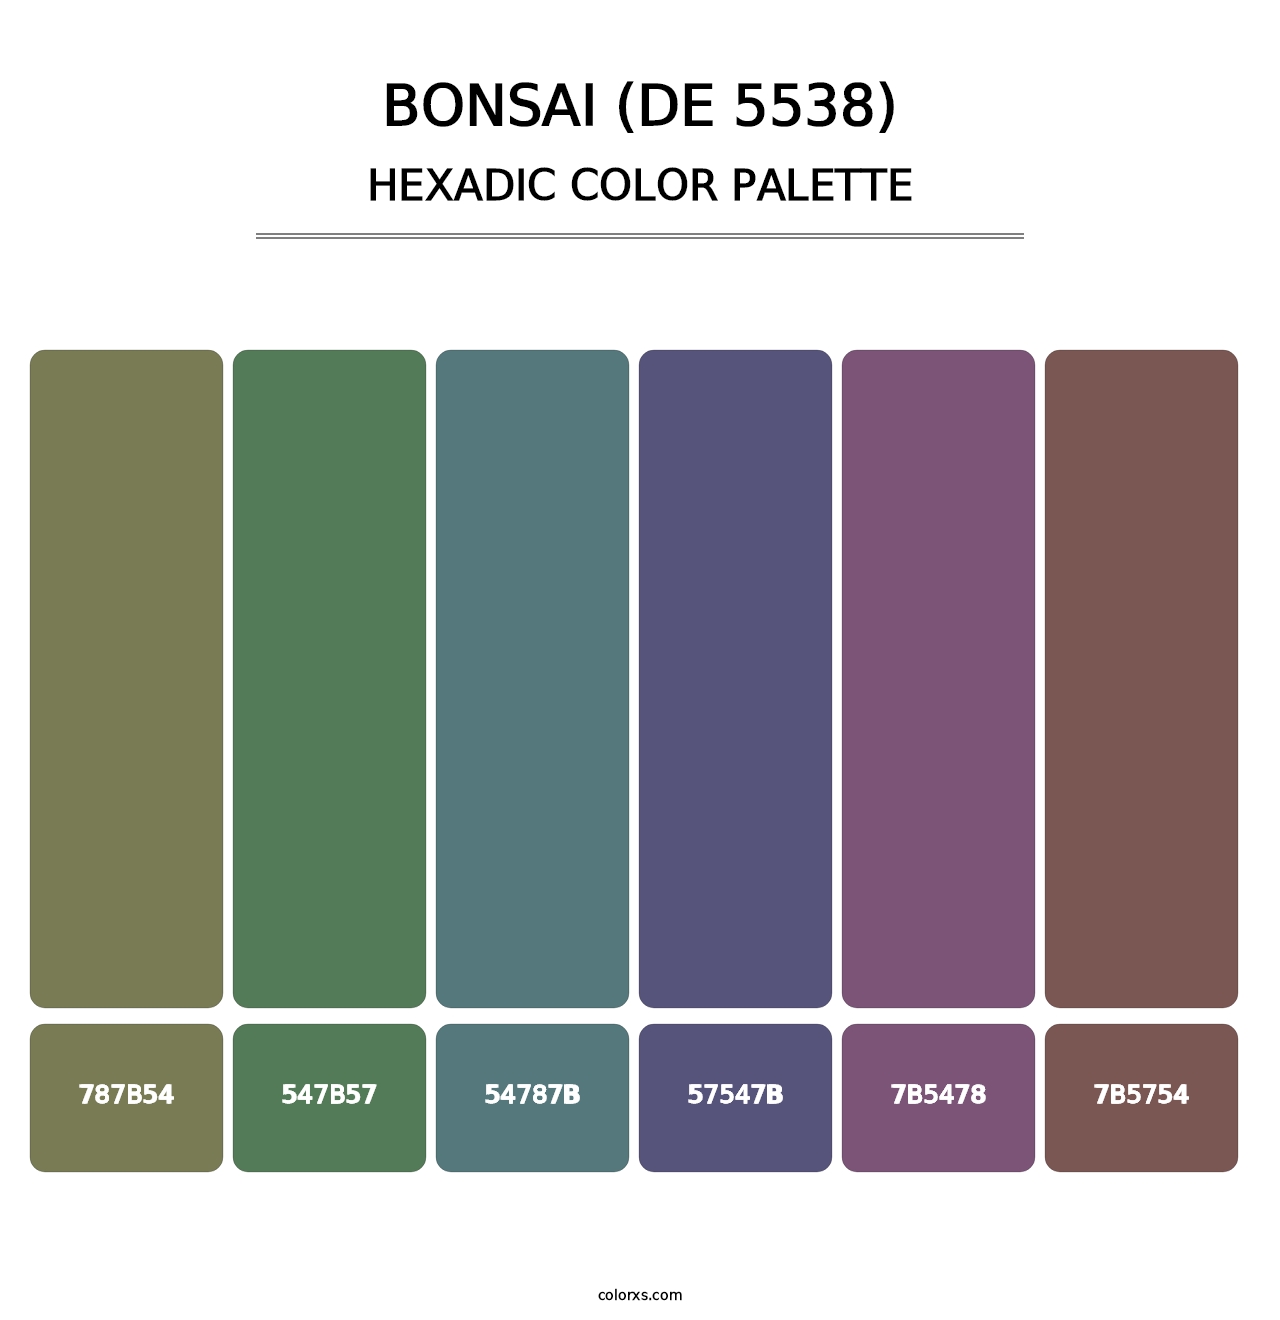 Bonsai (DE 5538) - Hexadic Color Palette